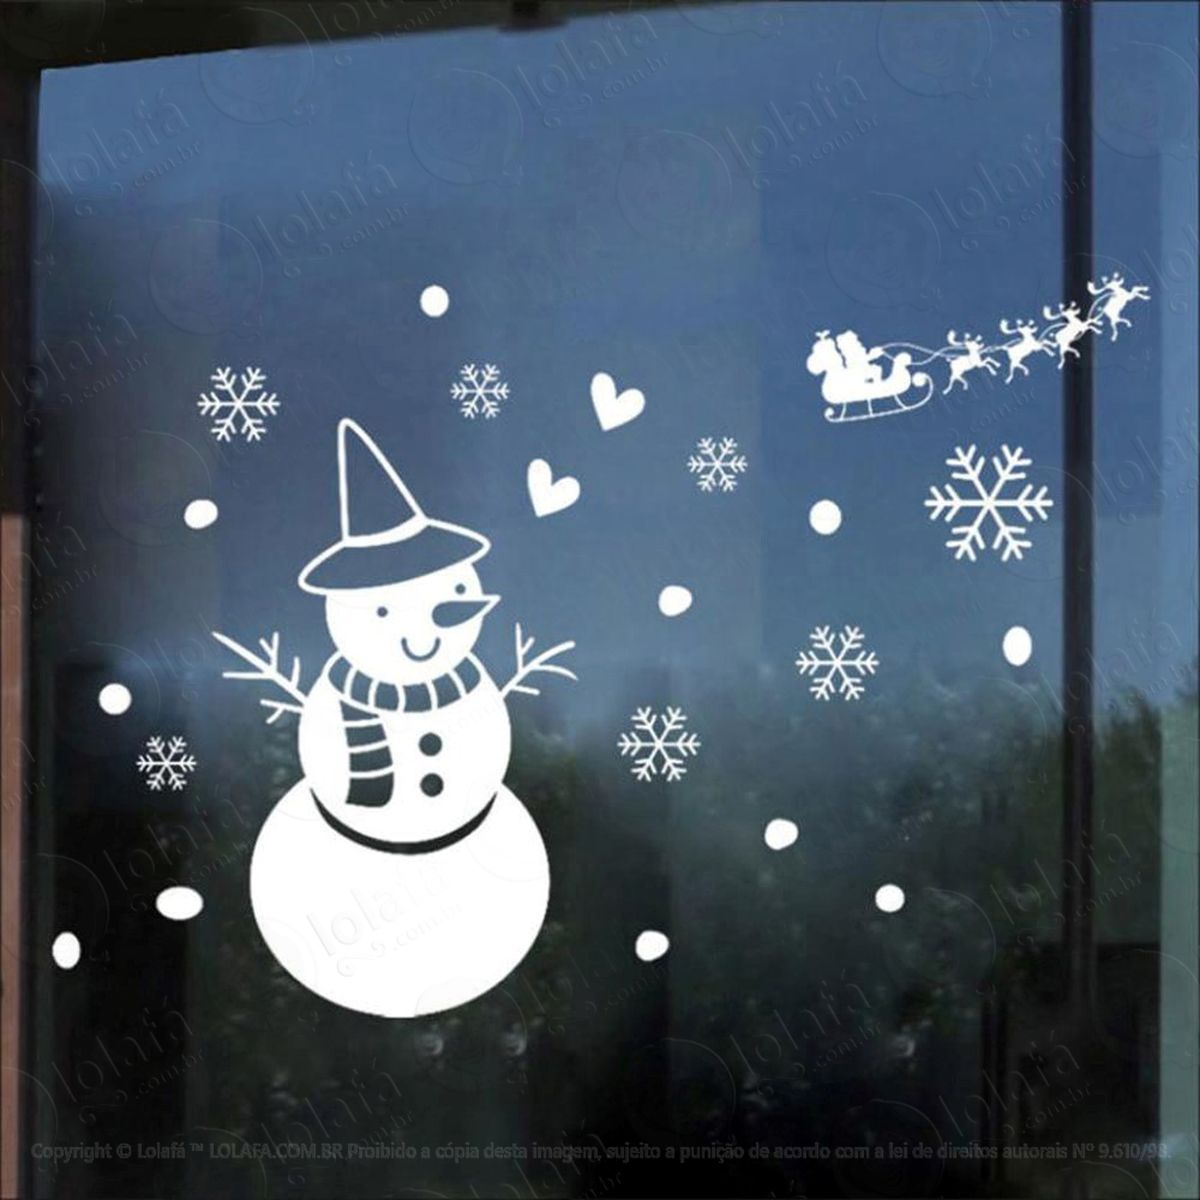 boneco de neve adesivo de natal para vitrine, parede, porta de vidro - decoração natalina mod:53